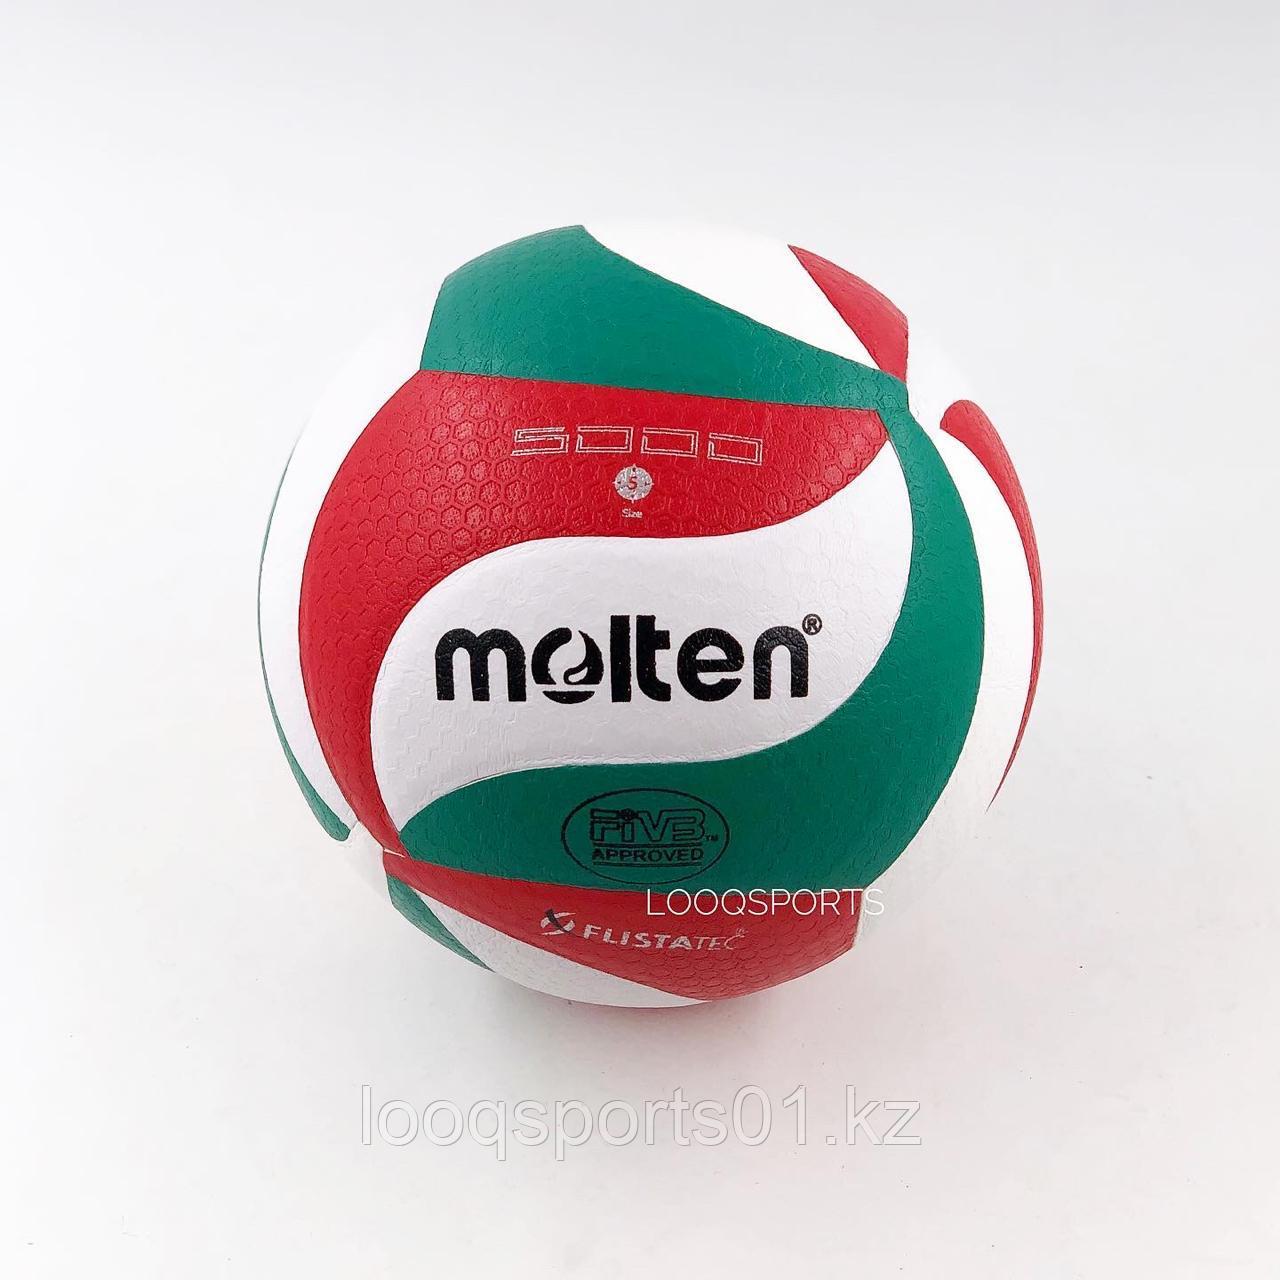 Мяч волейбольный Molten 5500